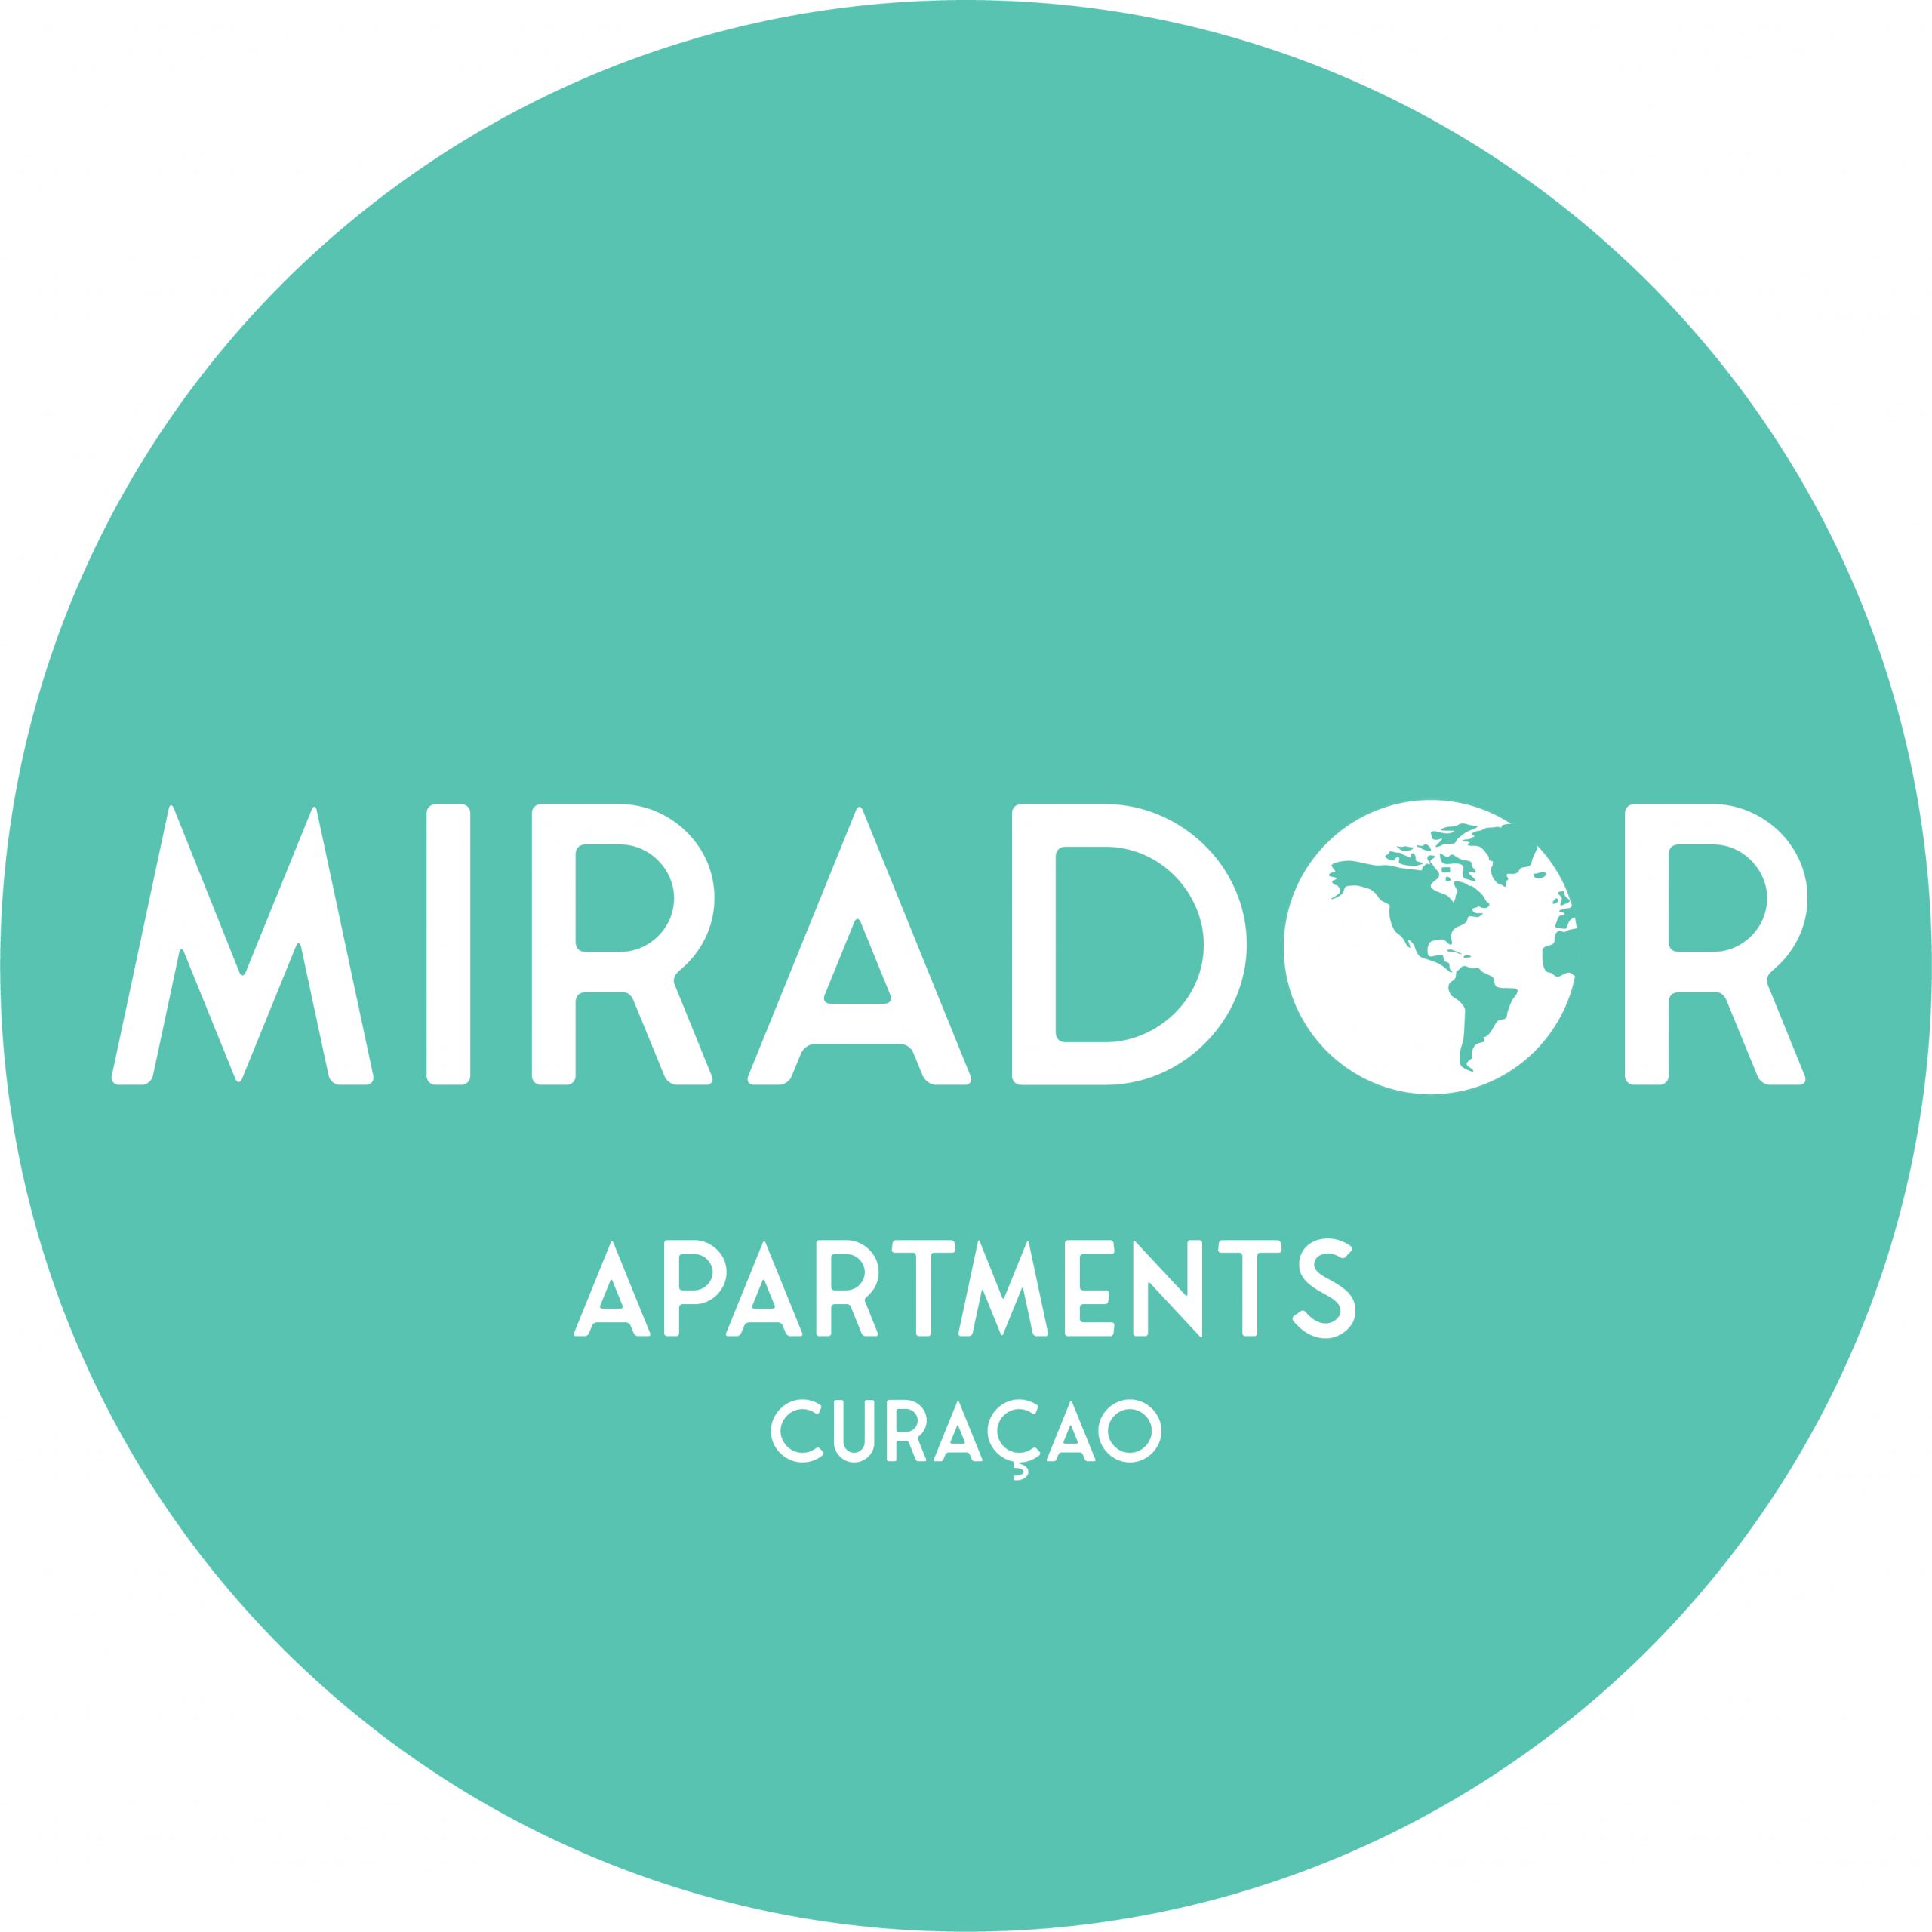 Mirador apartments